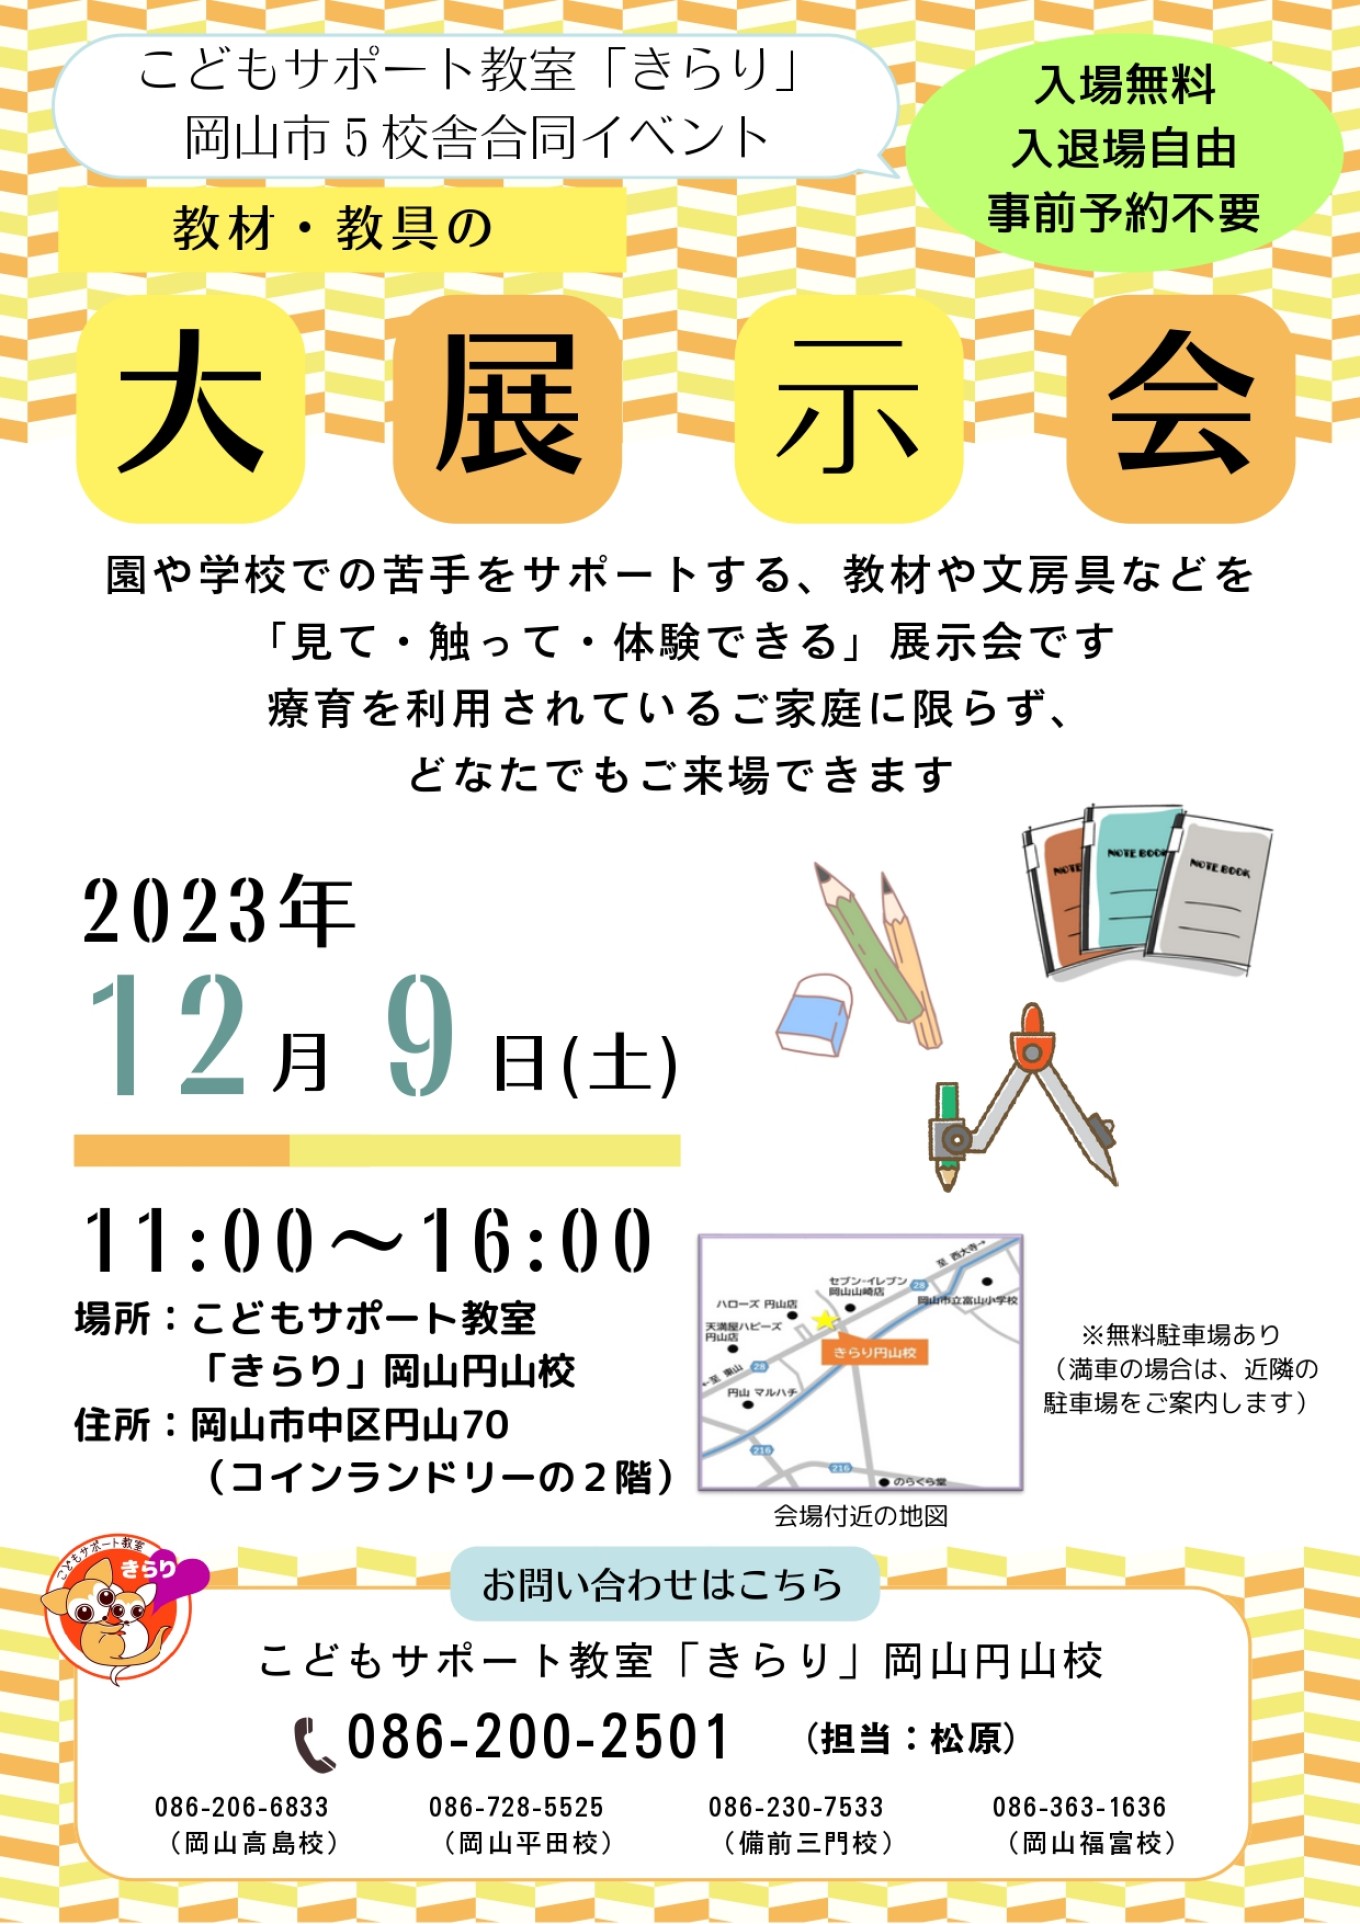 こどもサポート教室「きらり」+岡山市５校舎合同イベント (2)_page-0001.jpg